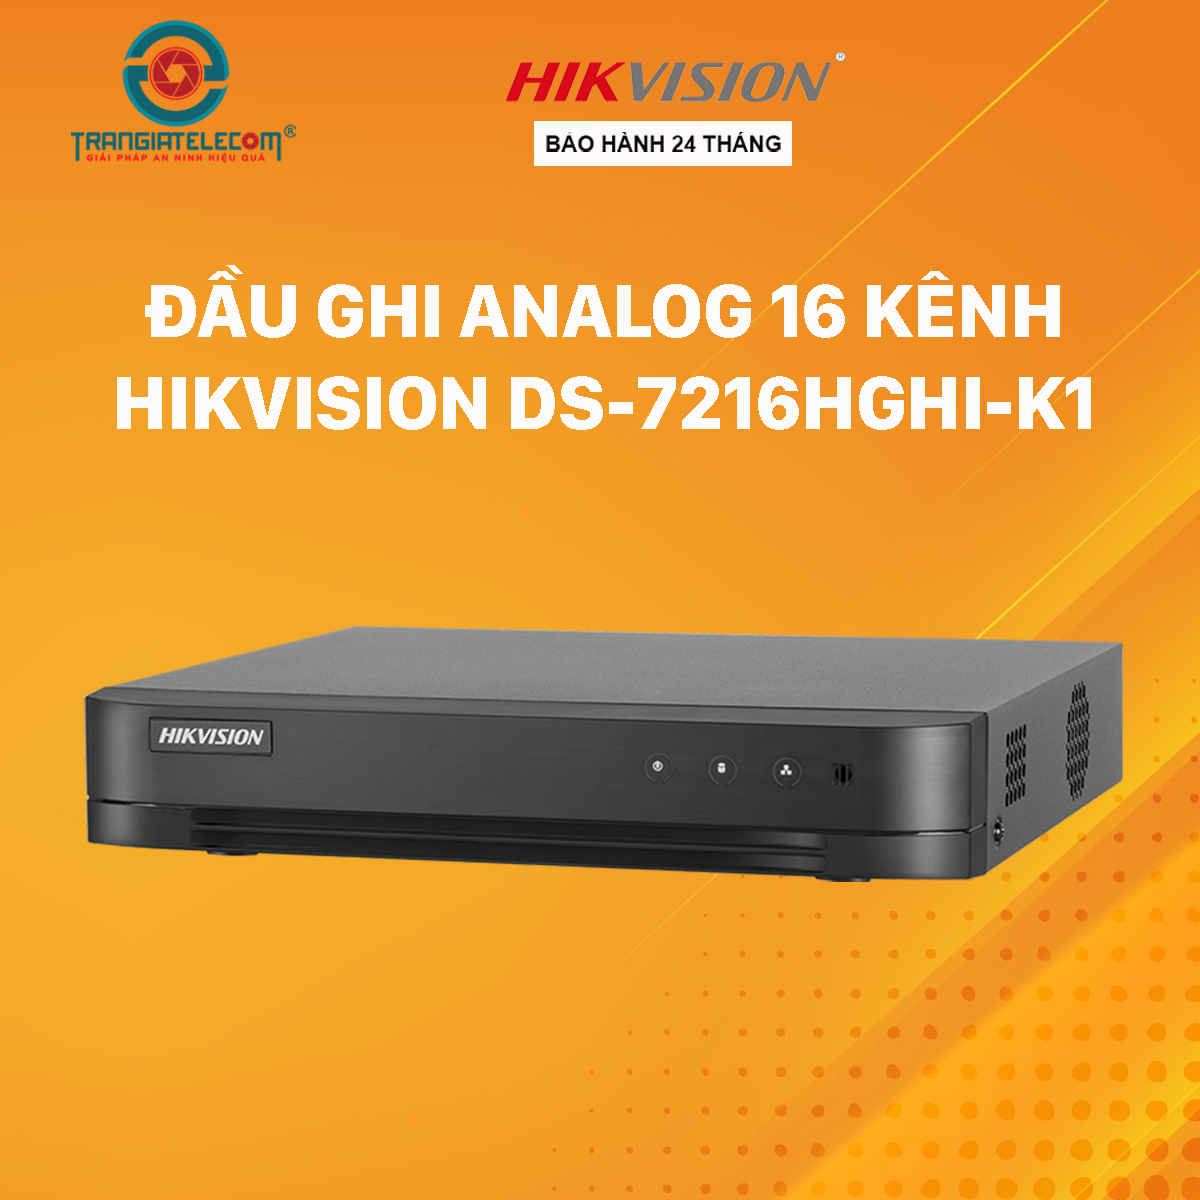 Đầu Ghi Hình Hikvision 16 Kênh Analog DS-7216HGHI-K1 - Hàng chính hãng